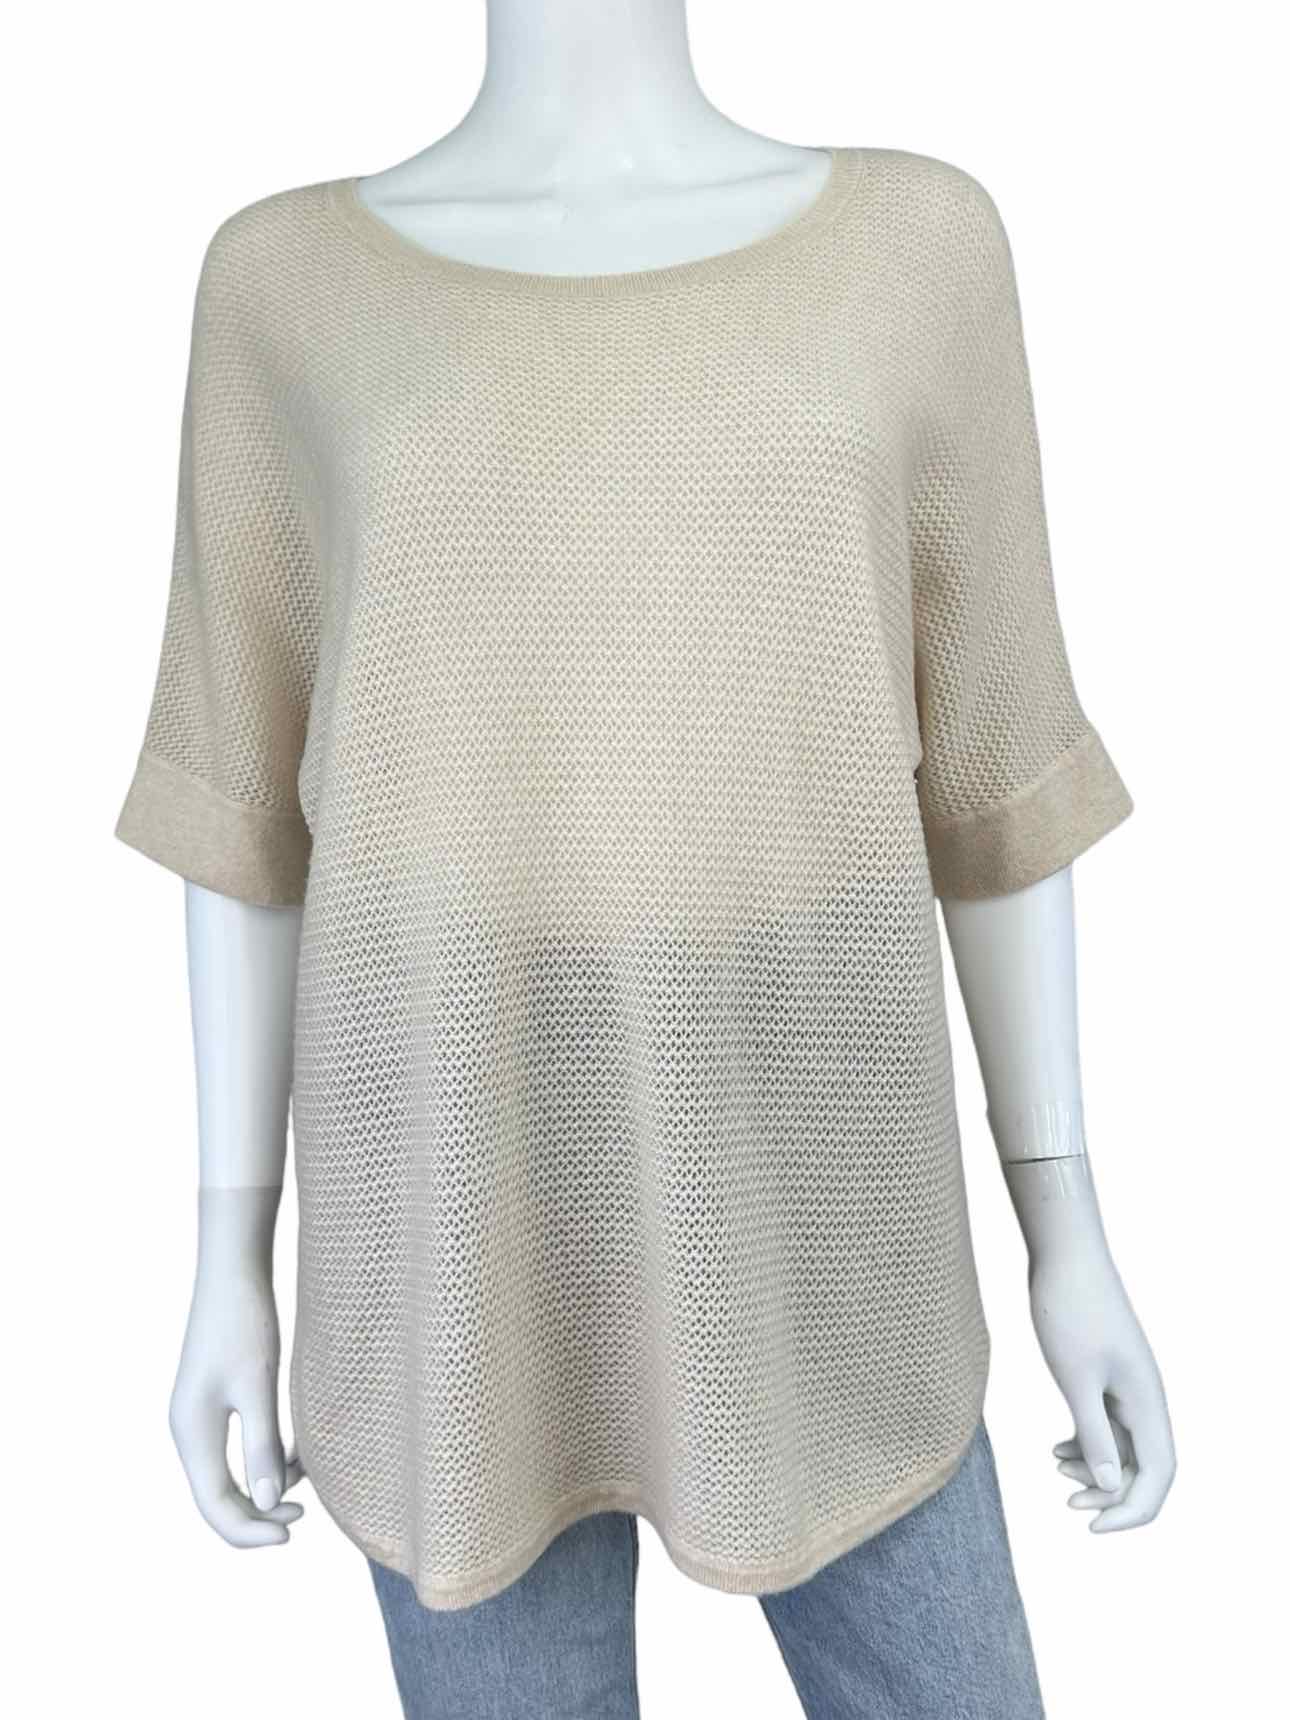 WHITE + WARREN Beige 100% Cashmere Sweater Size L